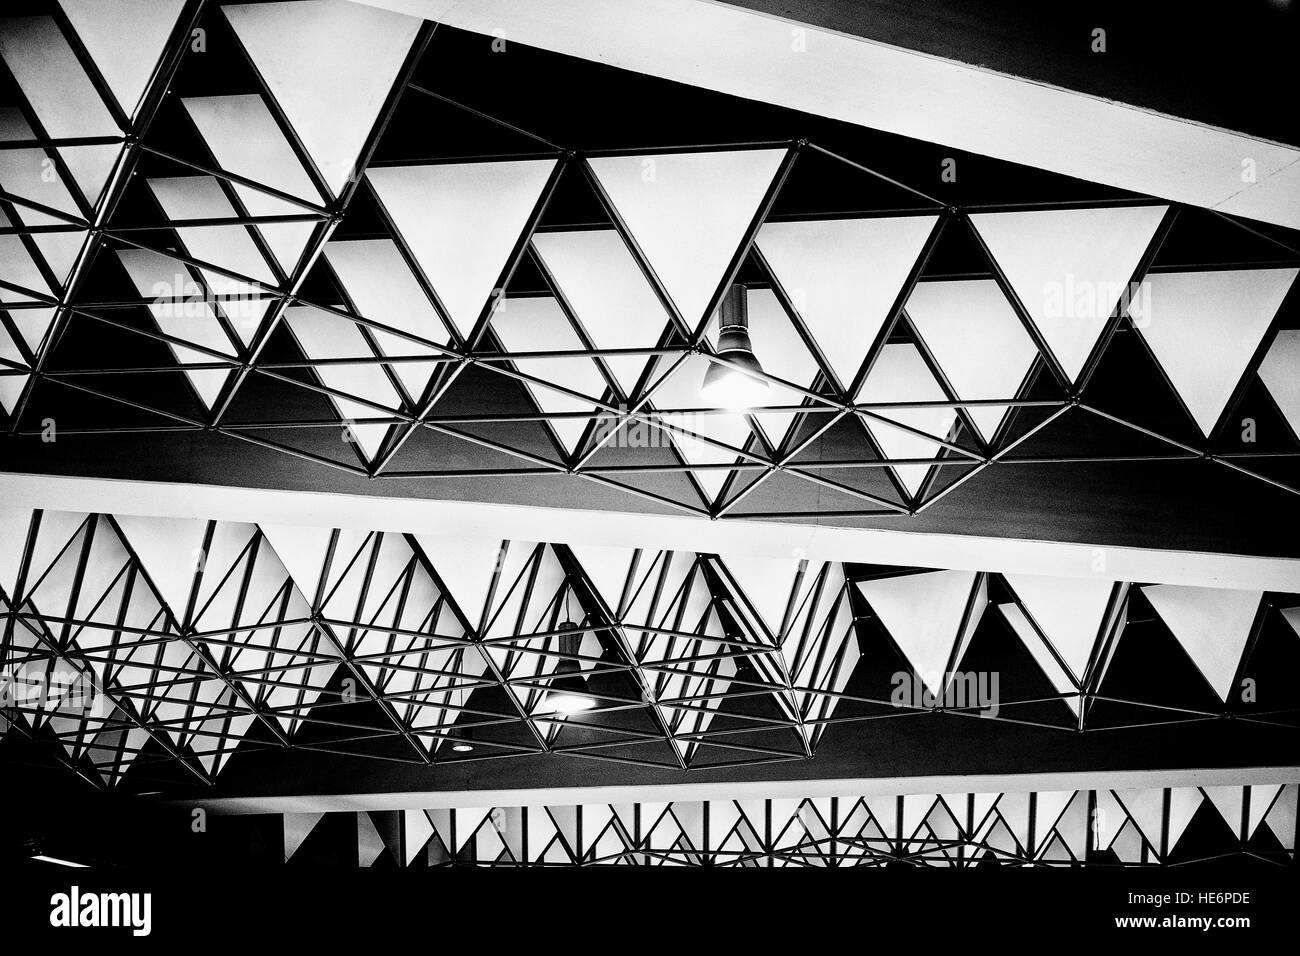 Dettaglio delle strutture architettoniche in bianco e nero Foto Stock